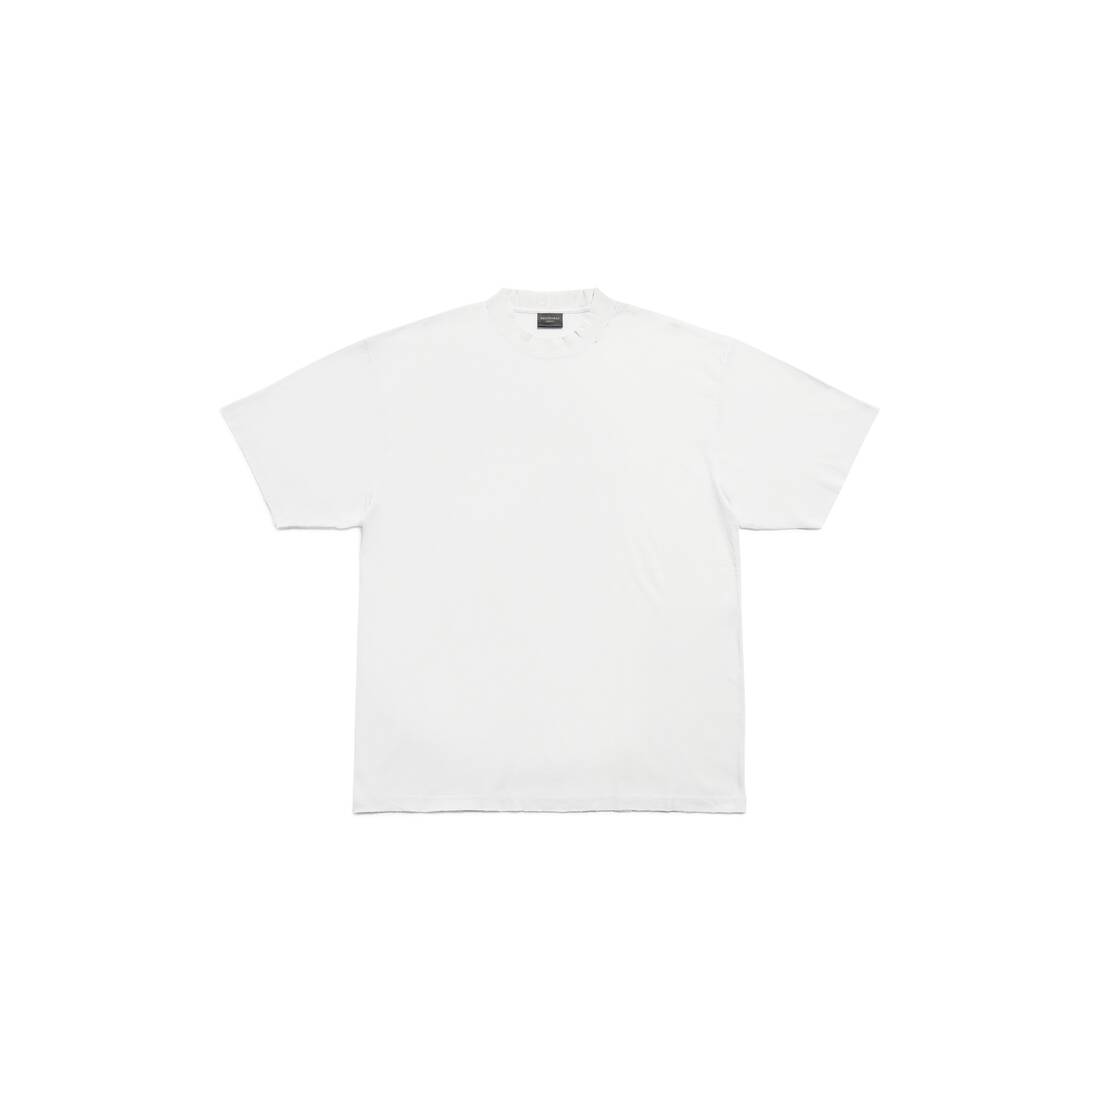 Balenciaga T-shirt Medium Fit in White | Balenciaga US